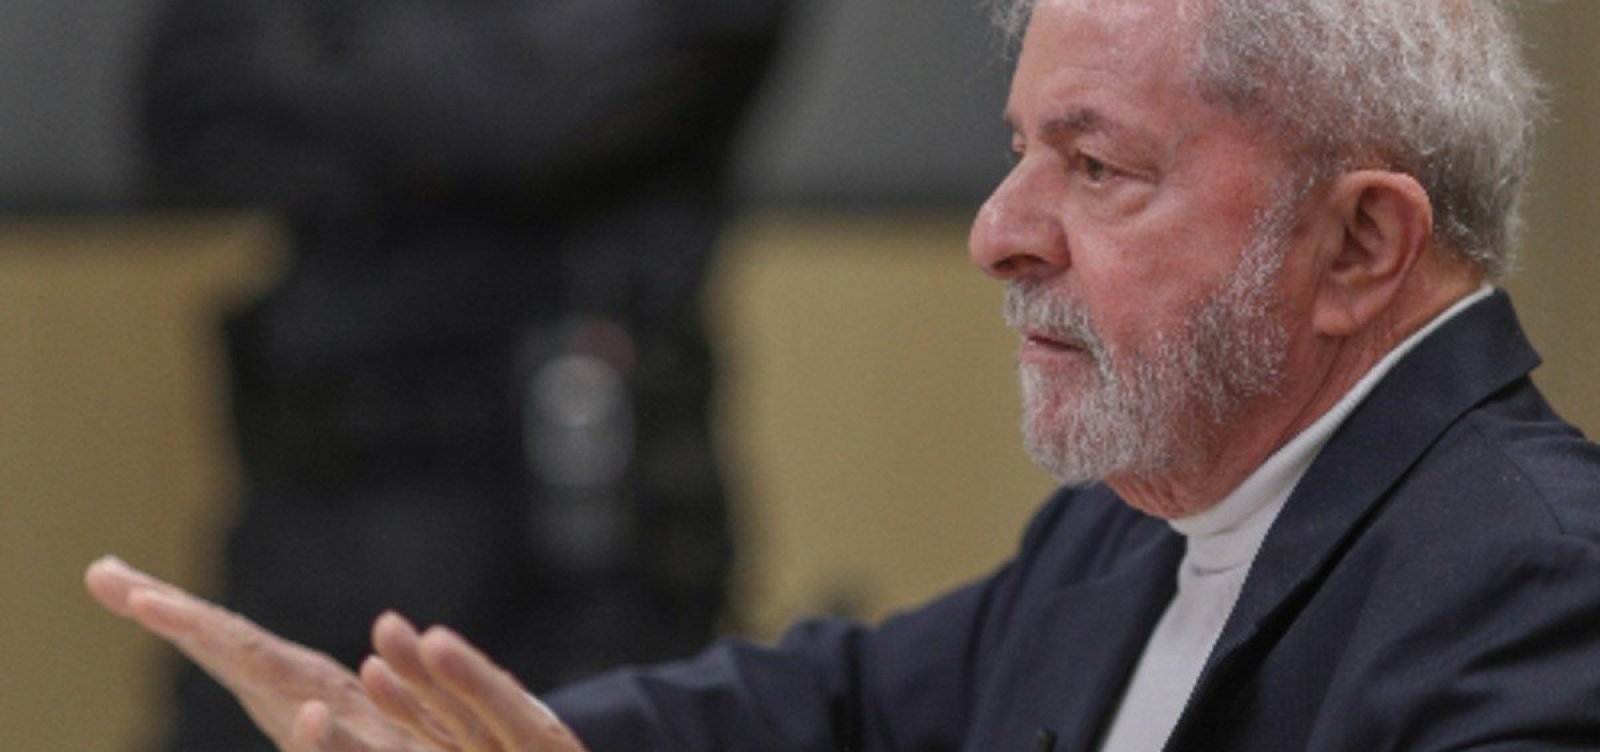 Mensagens revelam 'grosseiras ilegalidades' de Moro e da Lava Jato, diz defesa de Lula